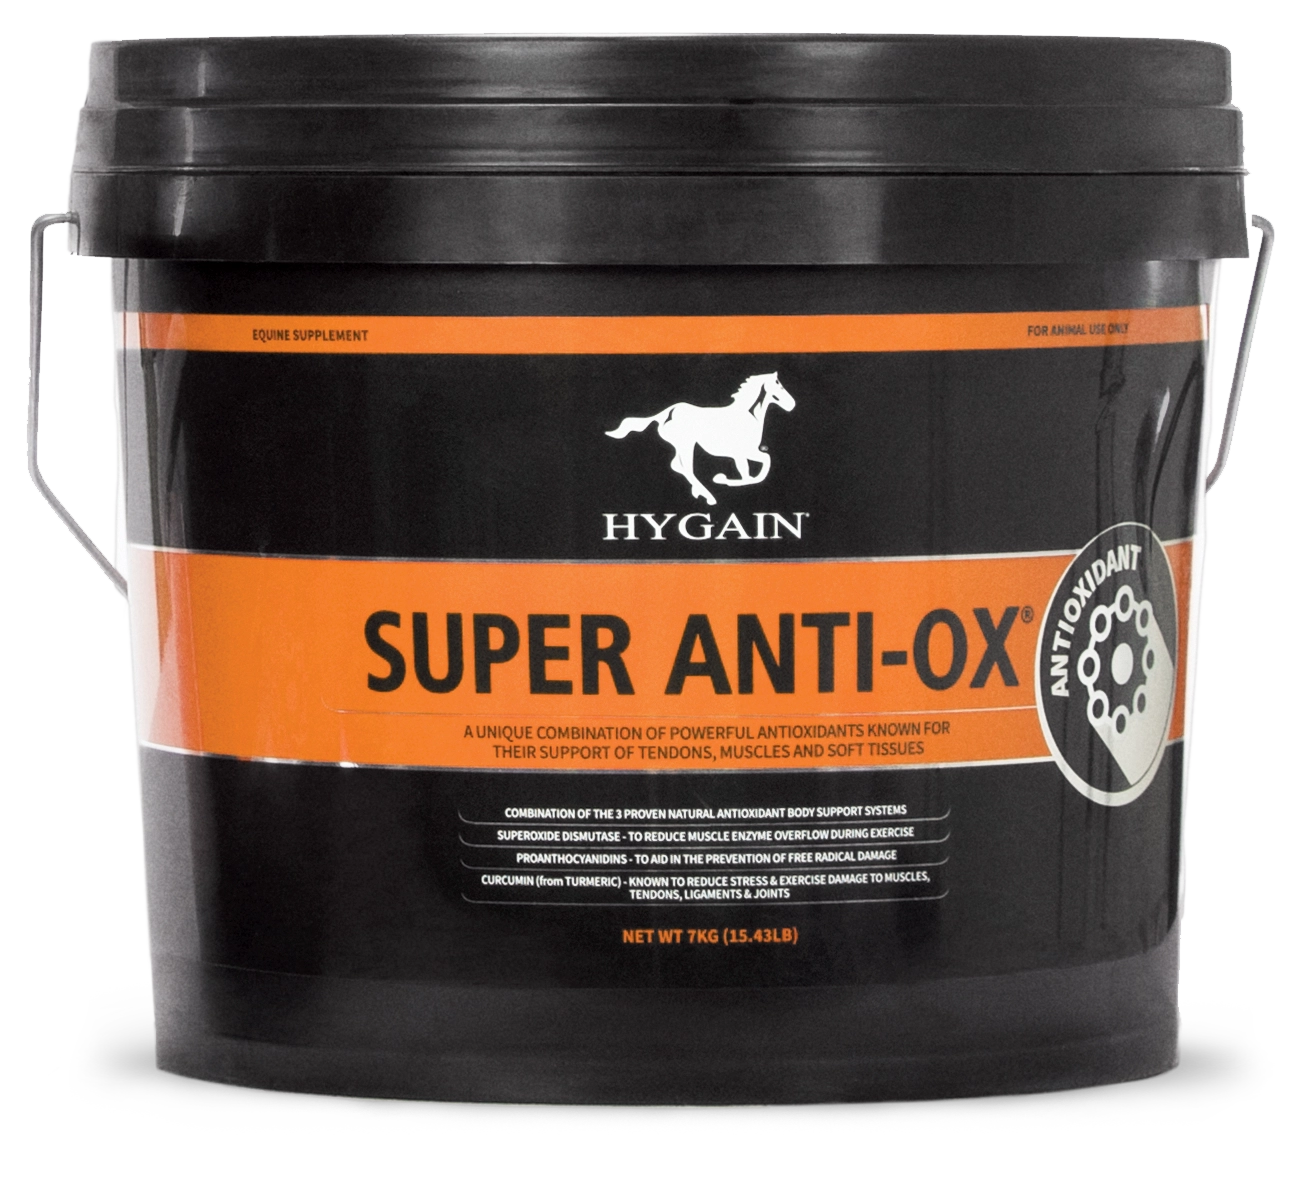 Hygain Super Anti-Ox Large